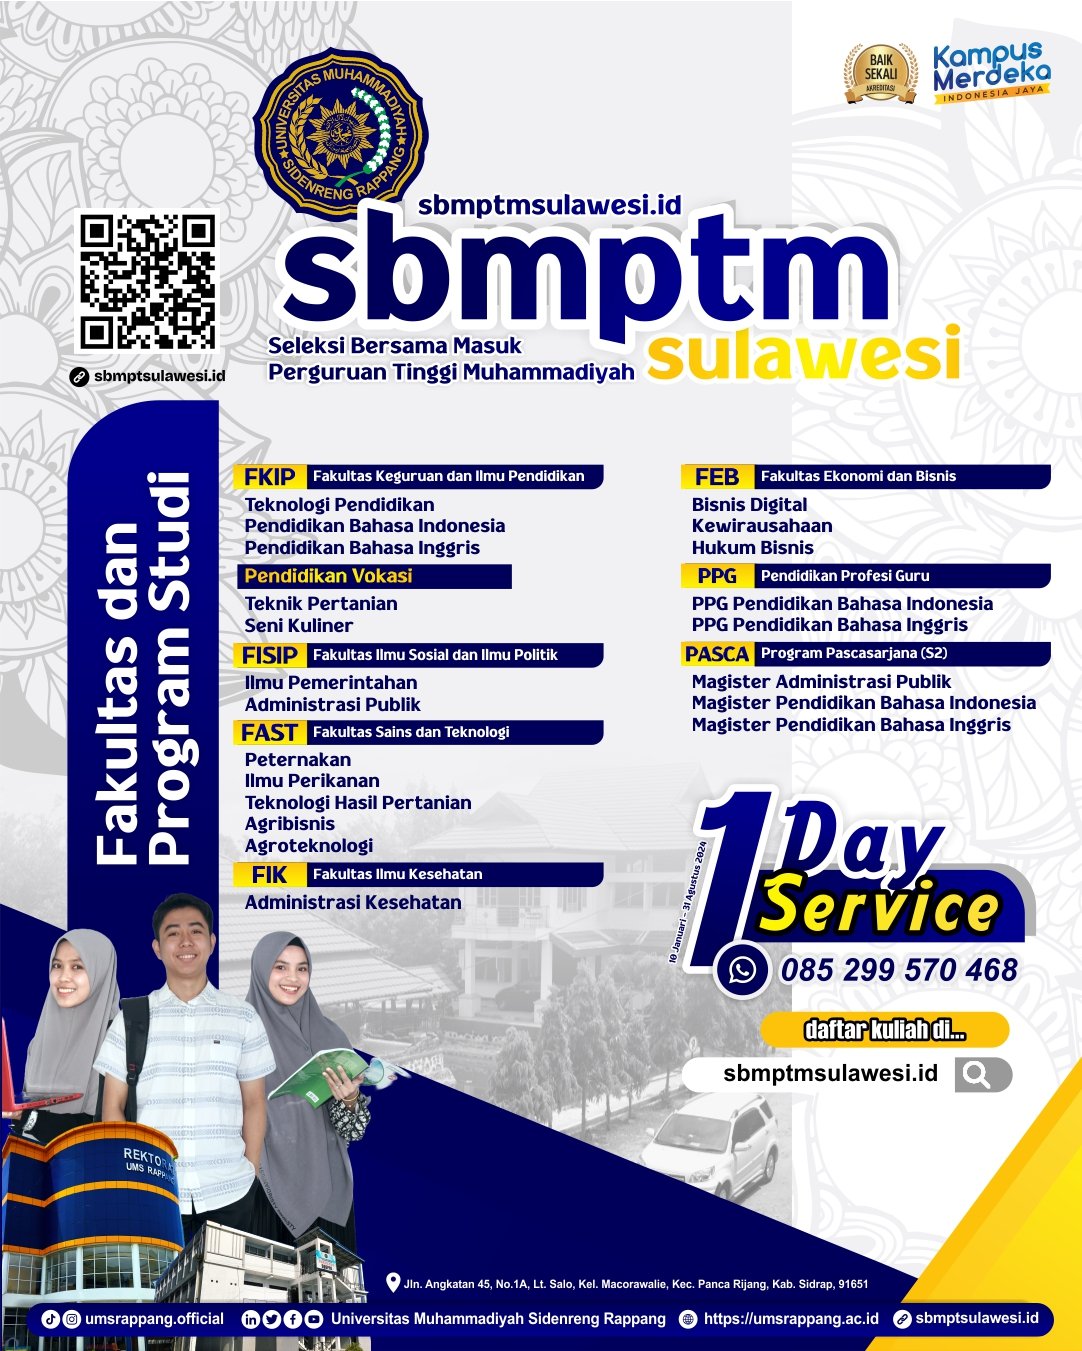 SBMPTM_Sulawesi.jpg 